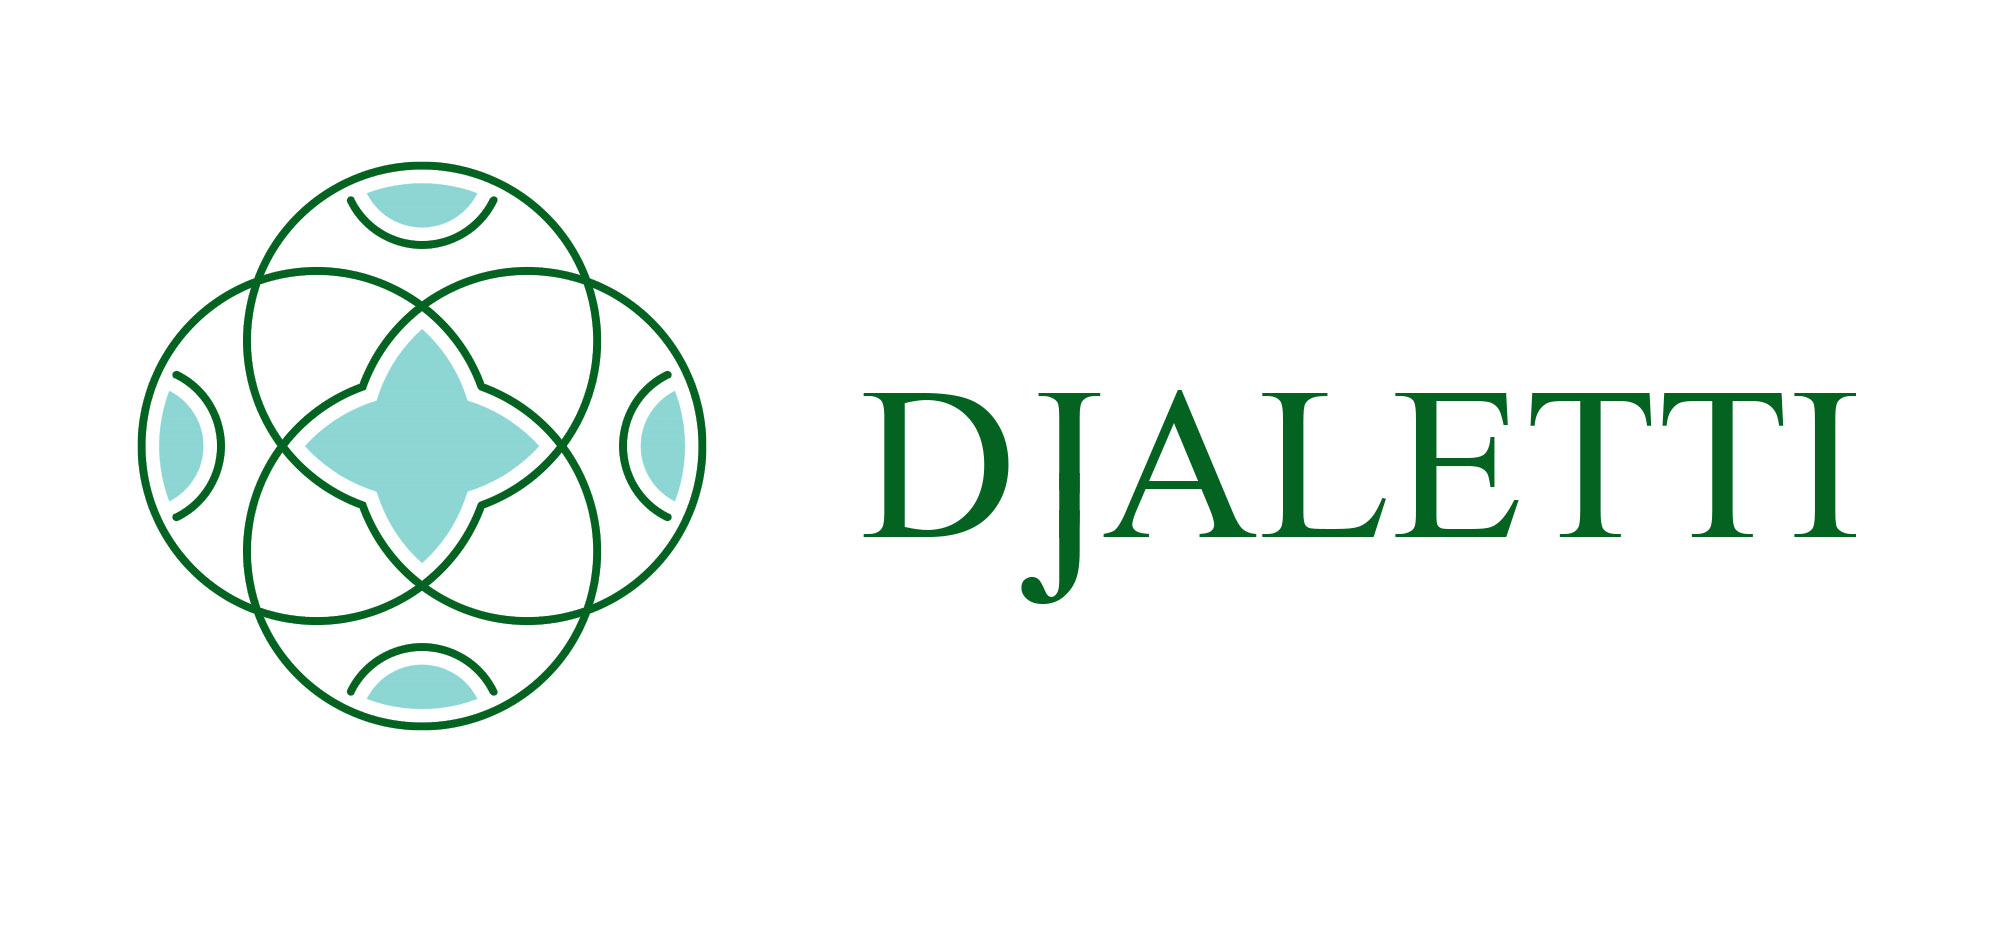 DJALETTI Project Logo